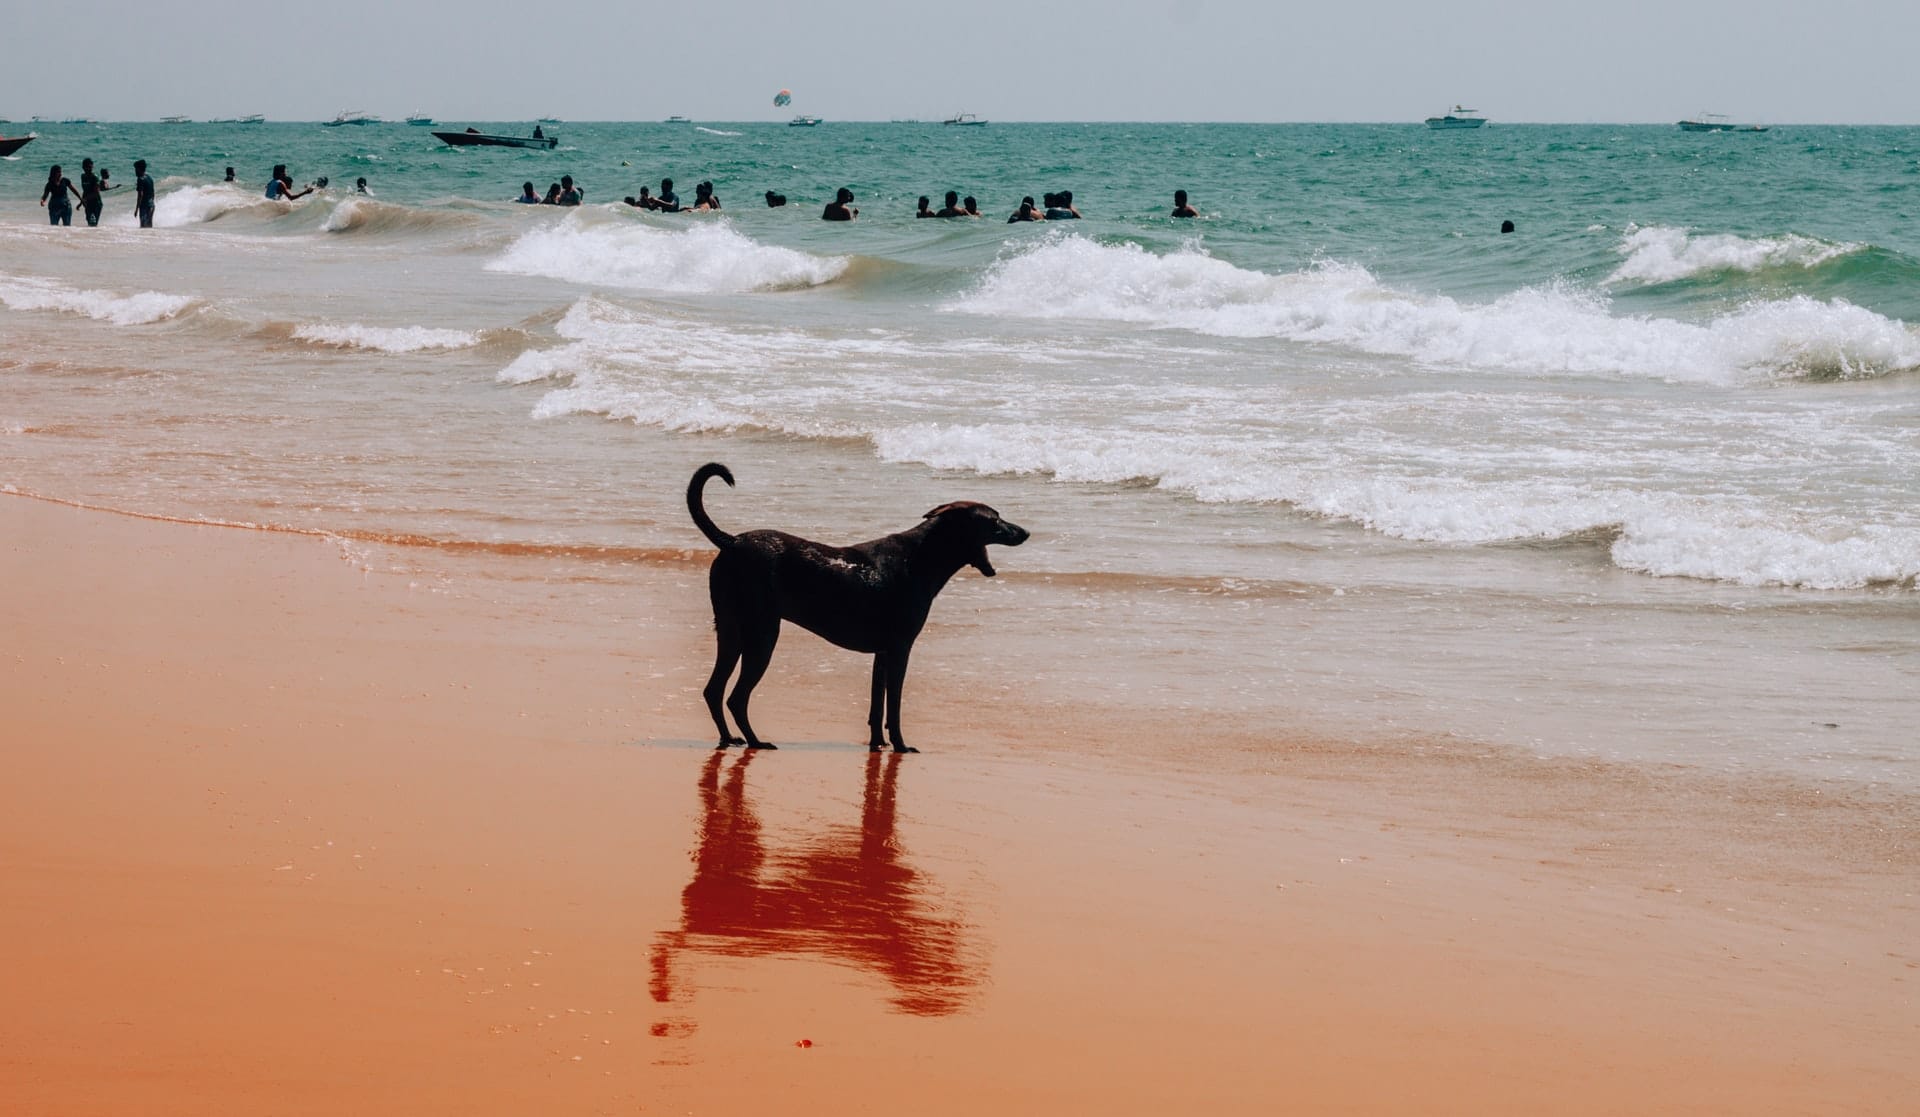 A dog standing on Dog Beach in San Diego - photo taken by Alex Rybin on Unsplash